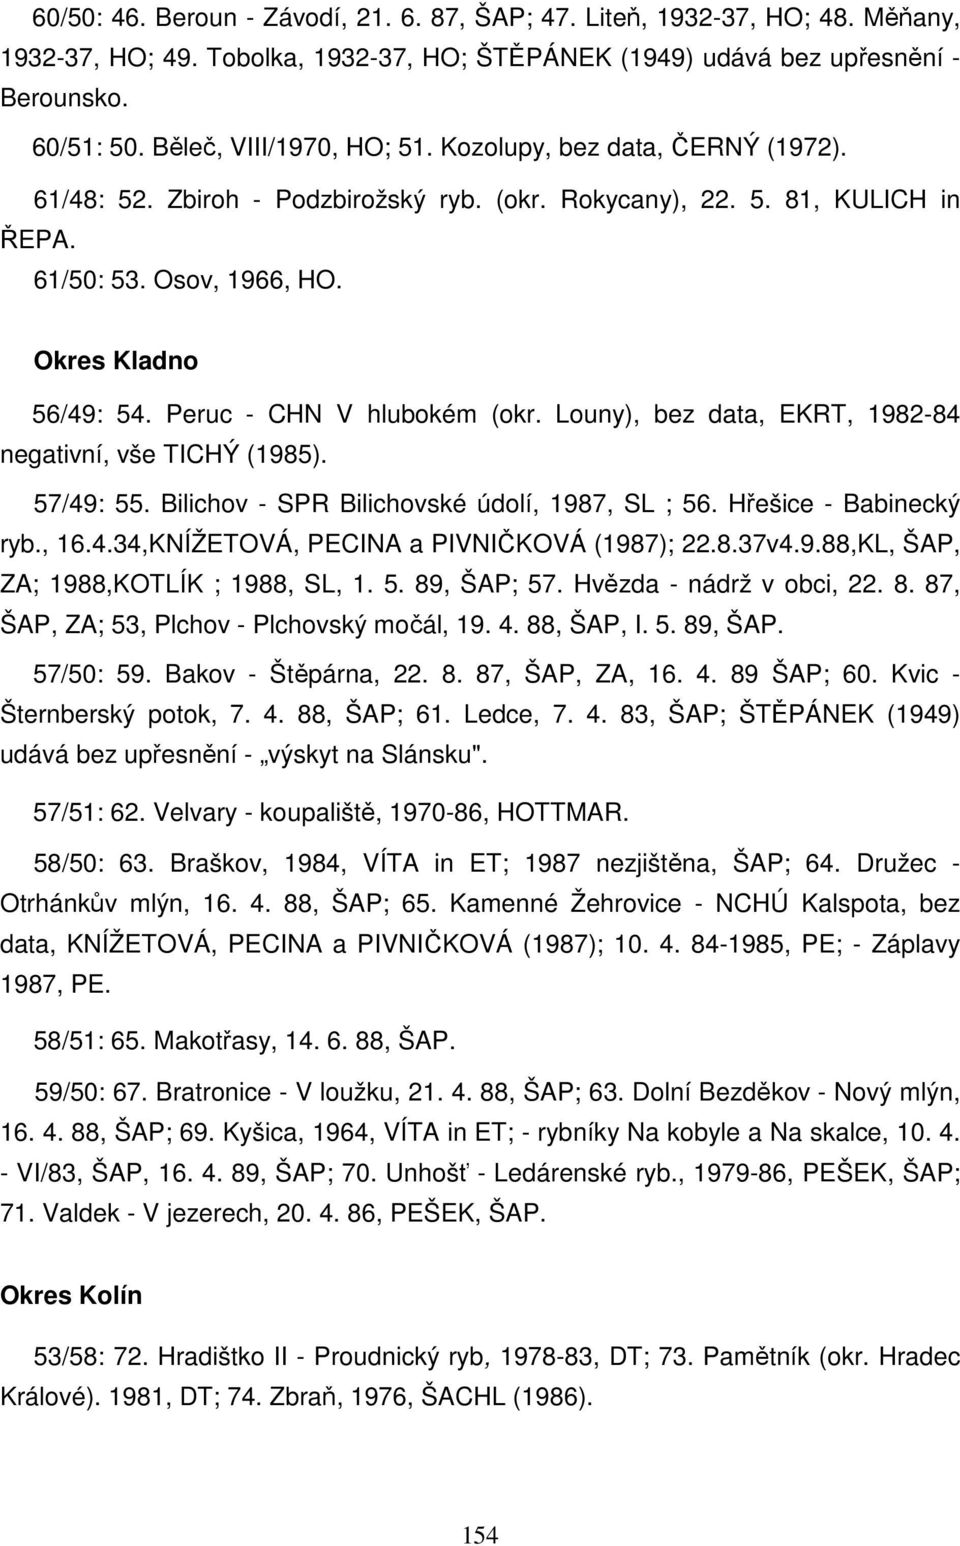 Peruc - CHN V hlubokém (okr. Louny), bez data, EKRT, 1982-84 negativní, vše TICHÝ (1985). 57/49: 55. Bilichov - SPR Bilichovské údolí, 1987, SL ; 56. Hřešice - Babinecký ryb., 16.4.34,KNÍŽETOVÁ, PECINA a PIVNIČKOVÁ (1987); 22.